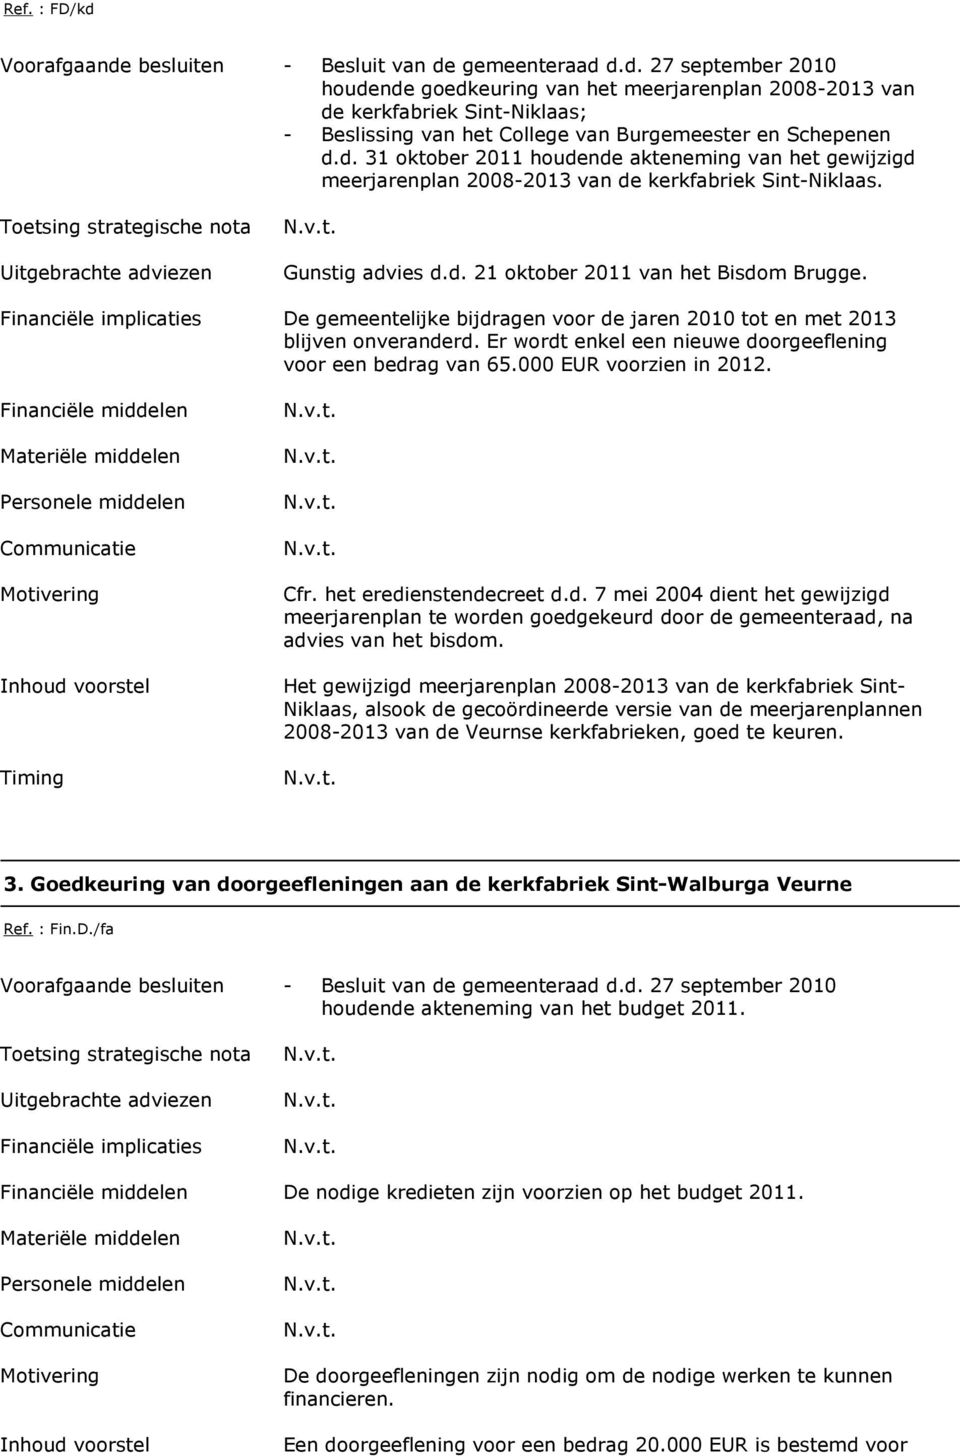 De gemeentelijke bijdragen voor de jaren 2010 tot en met 2013 blijven onveranderd. Er wordt enkel een nieuwe doorgeeflening voor een bedrag van 65.000 EUR voorzien in 2012. Cfr.